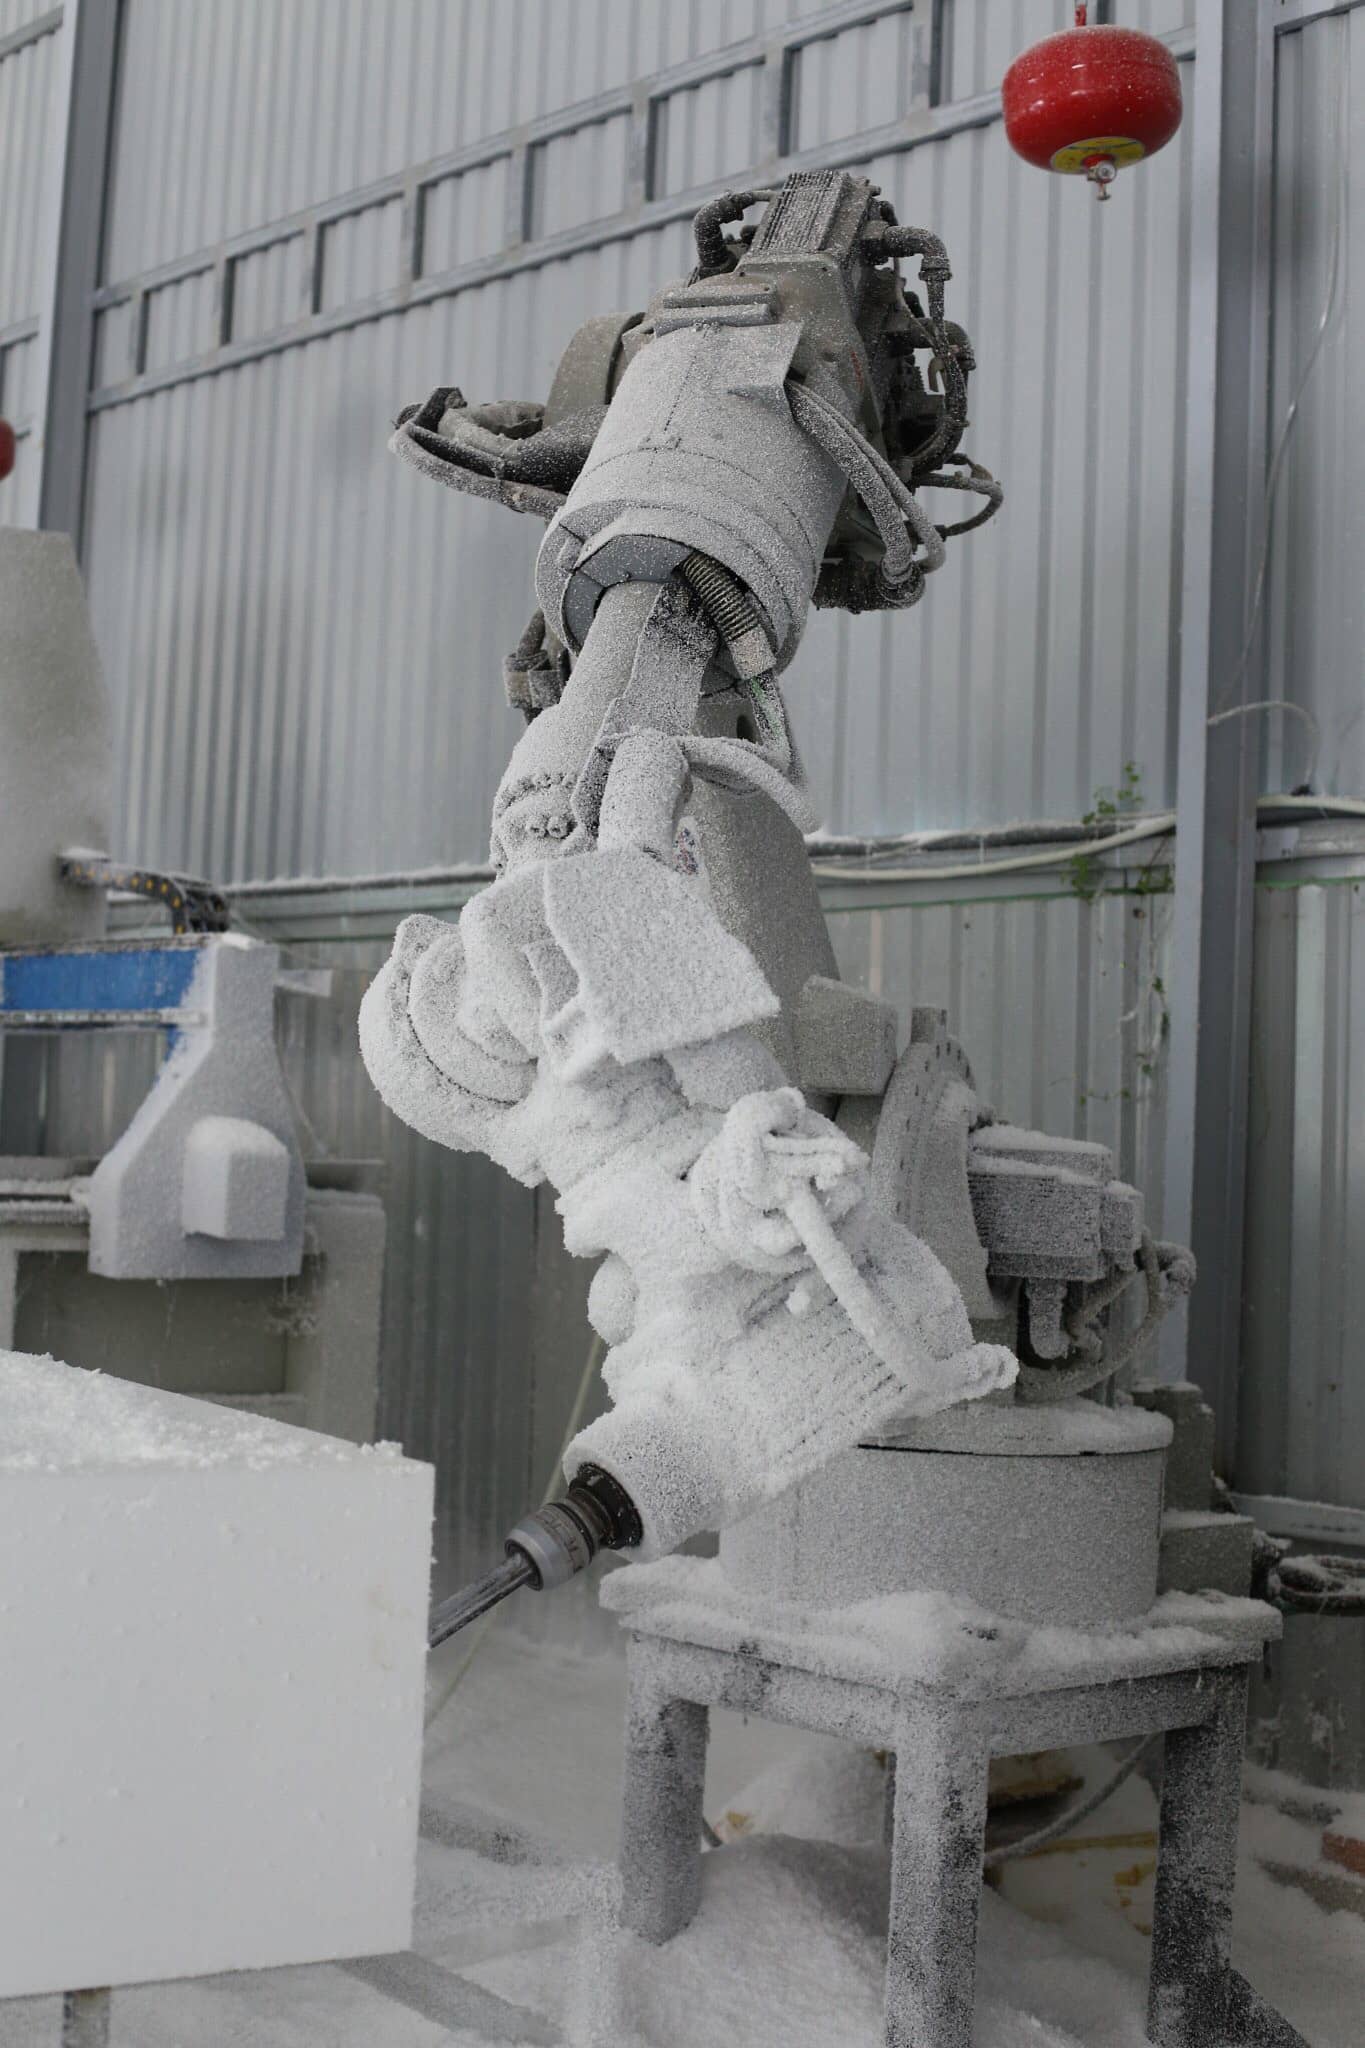 Cánh tay Robot điêu khắc mô hình xốp